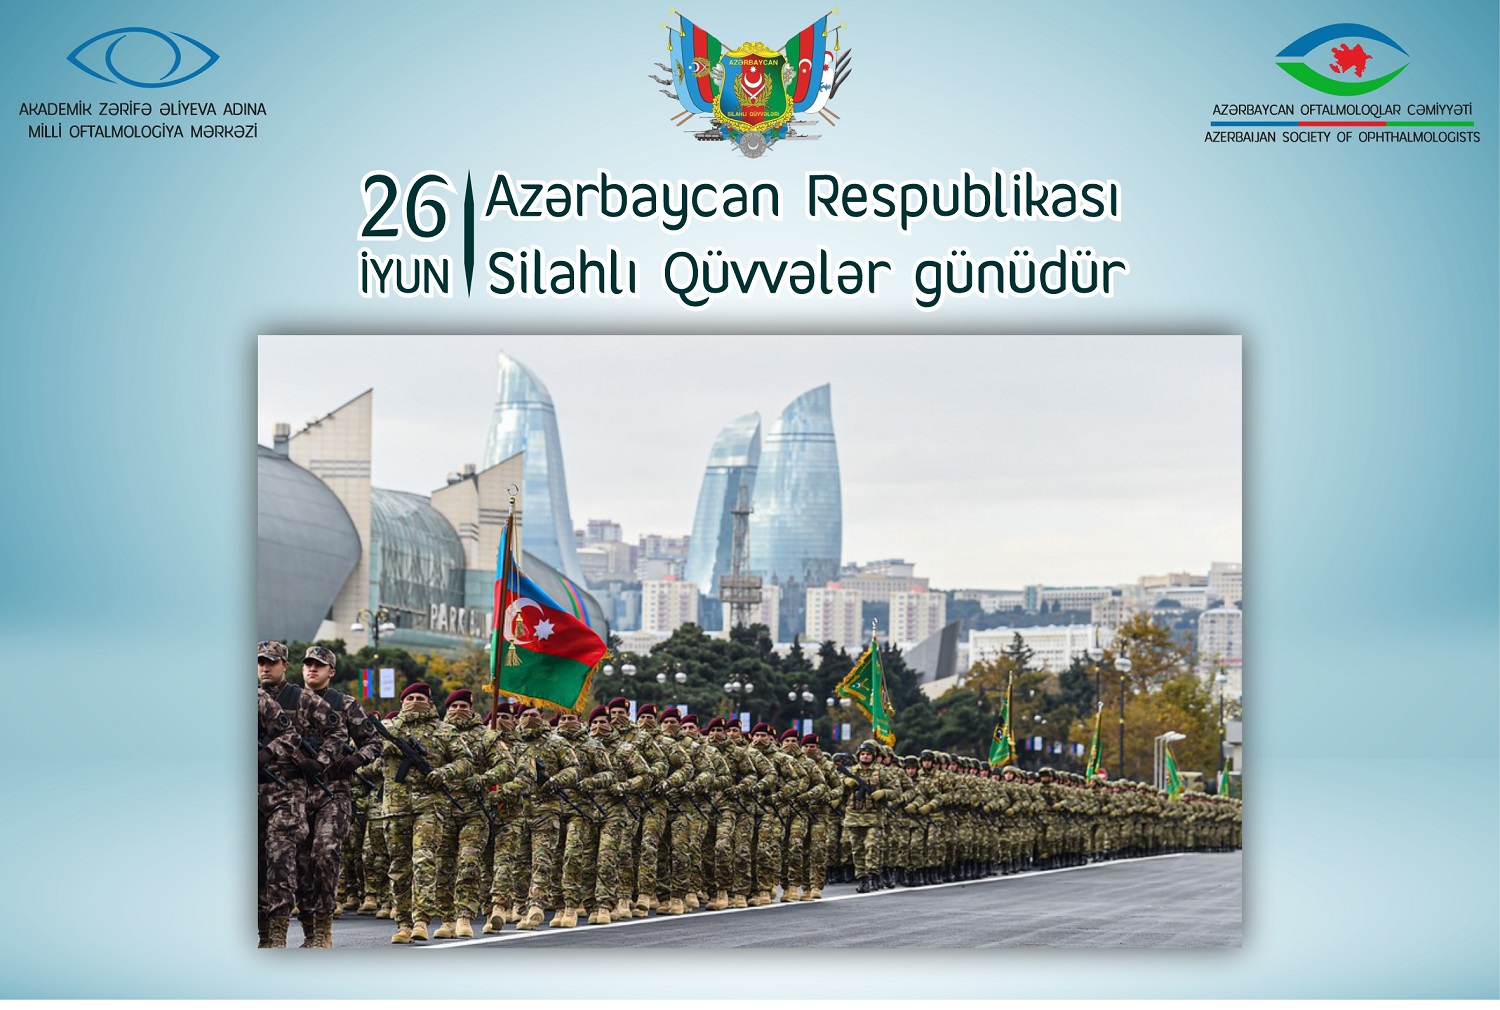 26 iyun Azərbaycan Respublikası Silahlı Qüvvələr günüdür!